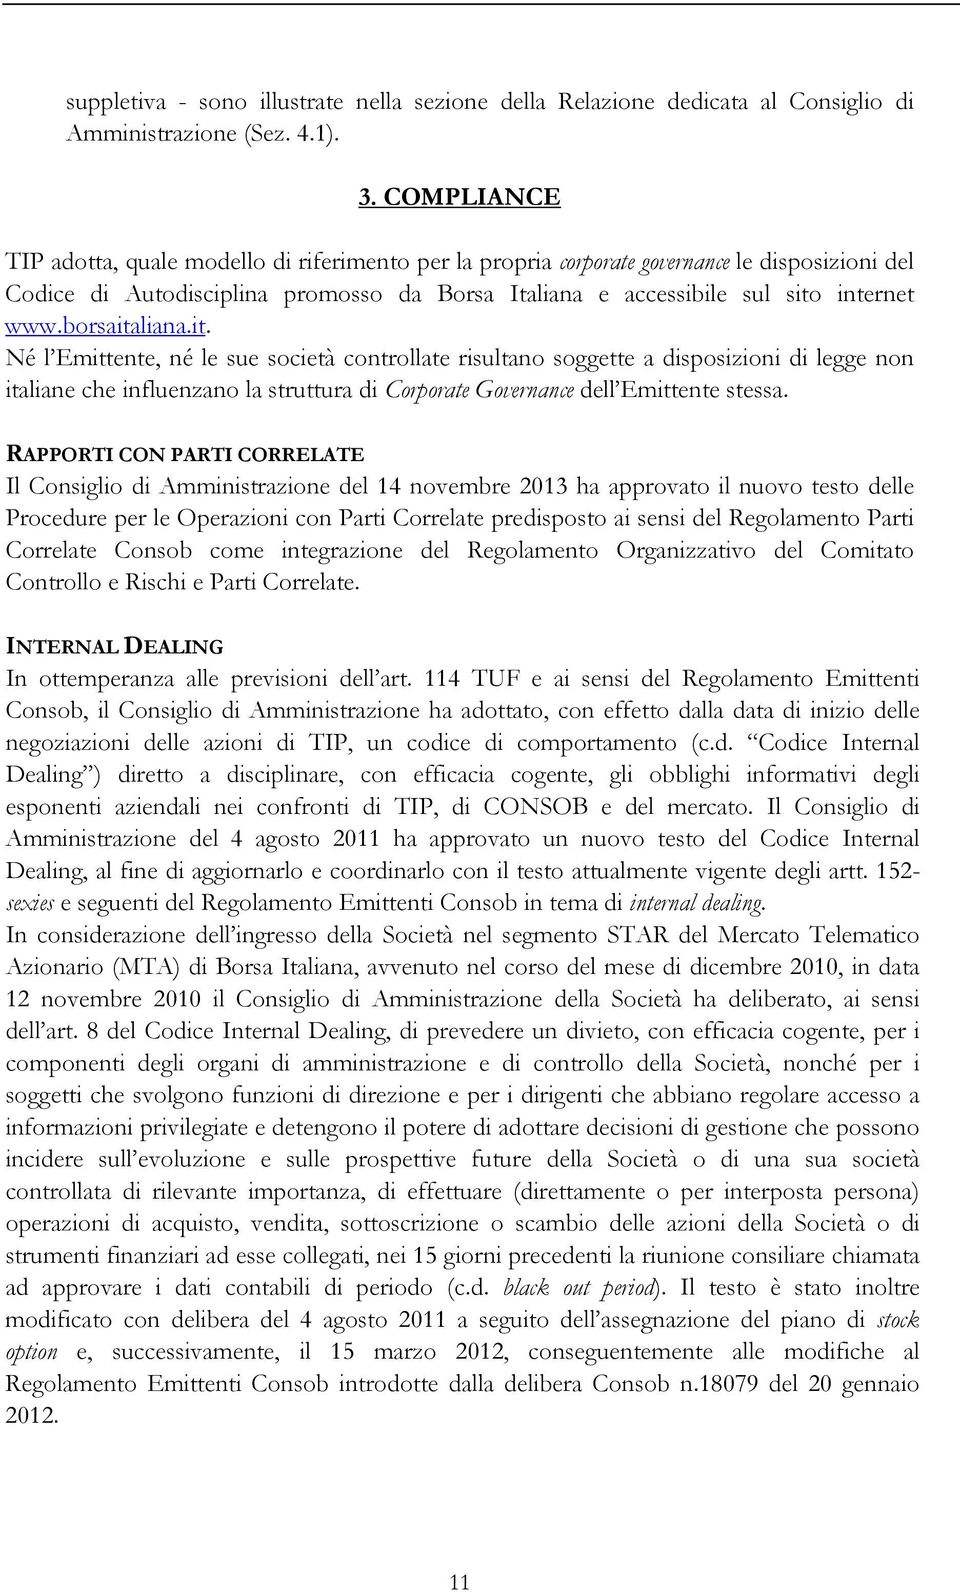 borsaitaliana.it. Né l Emittente, né le sue società controllate risultano soggette a disposizioni di legge non italiane che influenzano la struttura di Corporate Governance dell Emittente stessa.